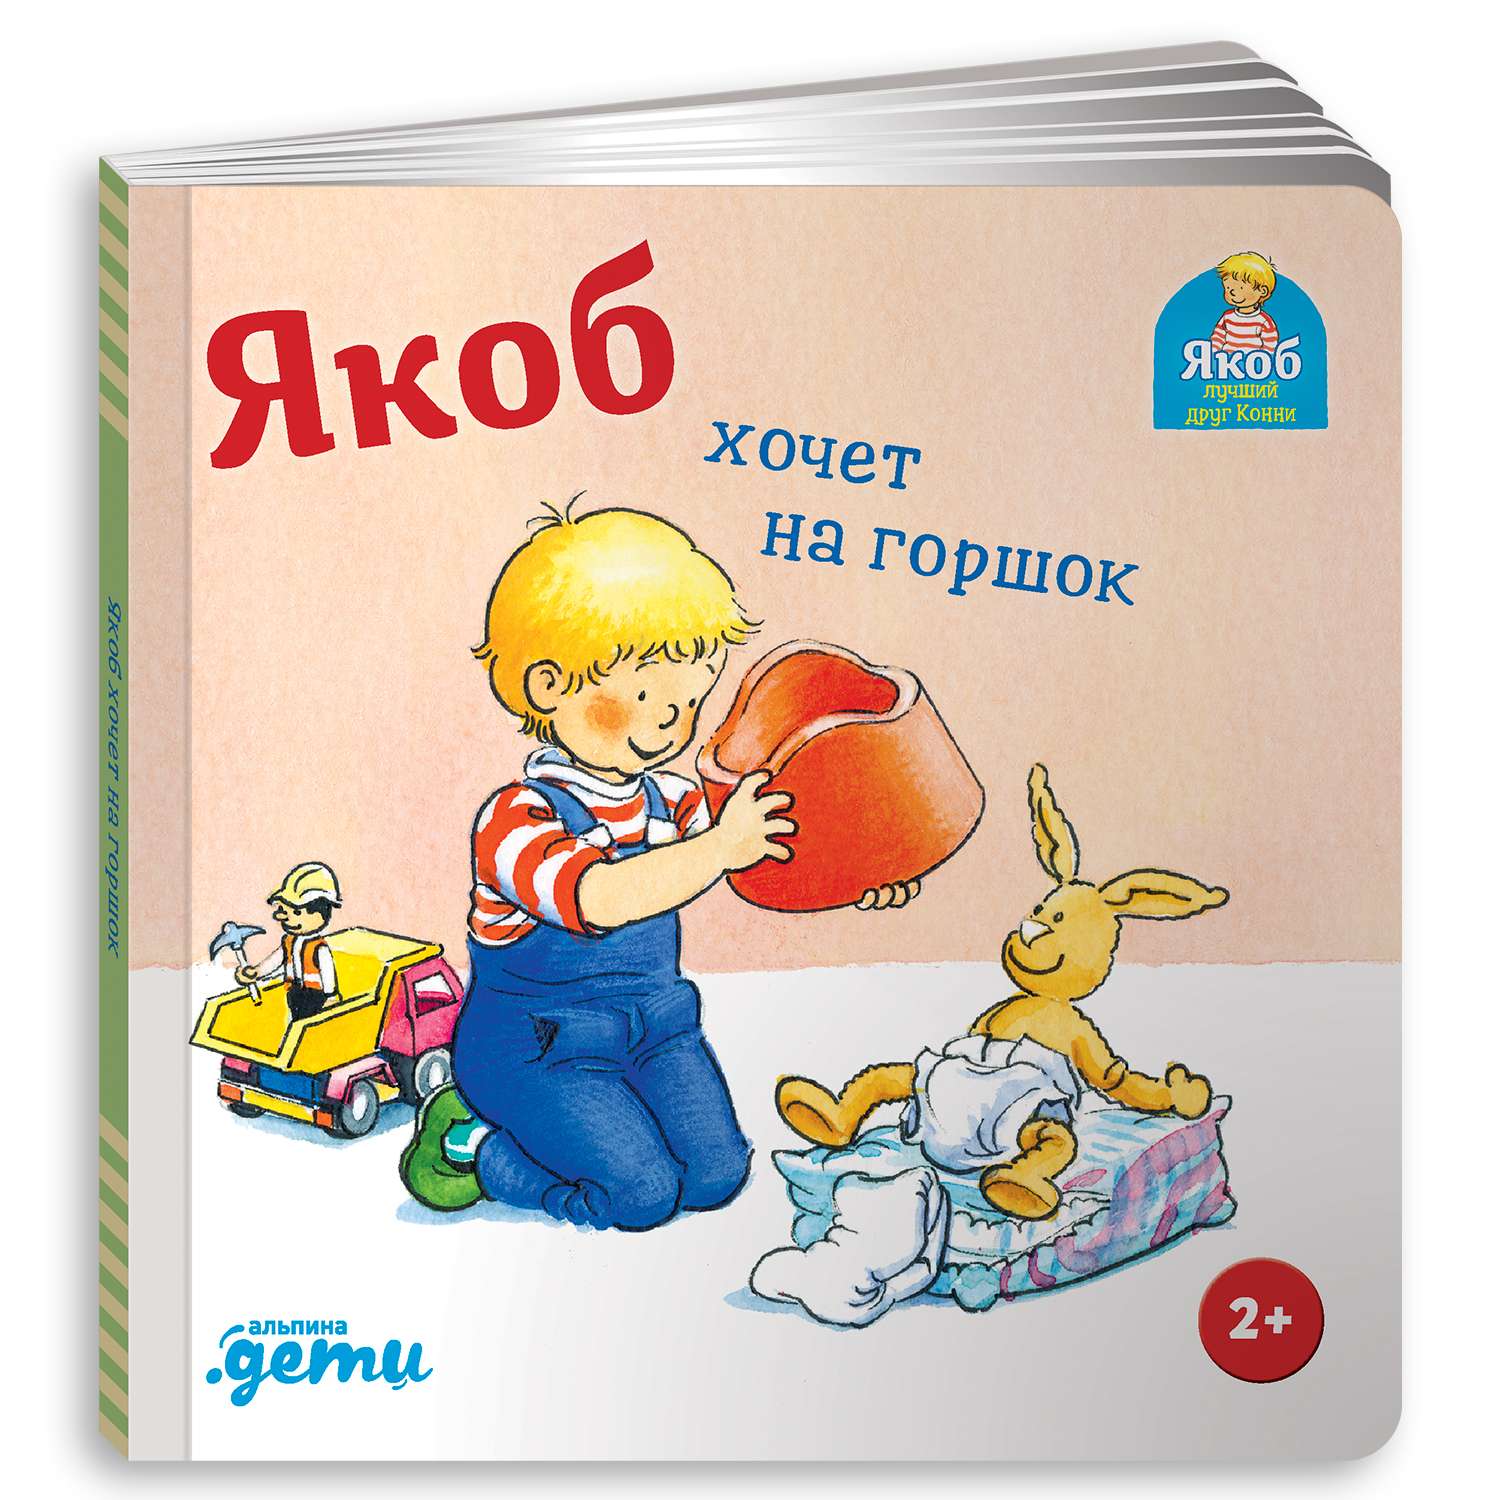 Книга Альпина. Дети Якоб хочет на горшок Развивающие книги Книги для малышей - фото 1